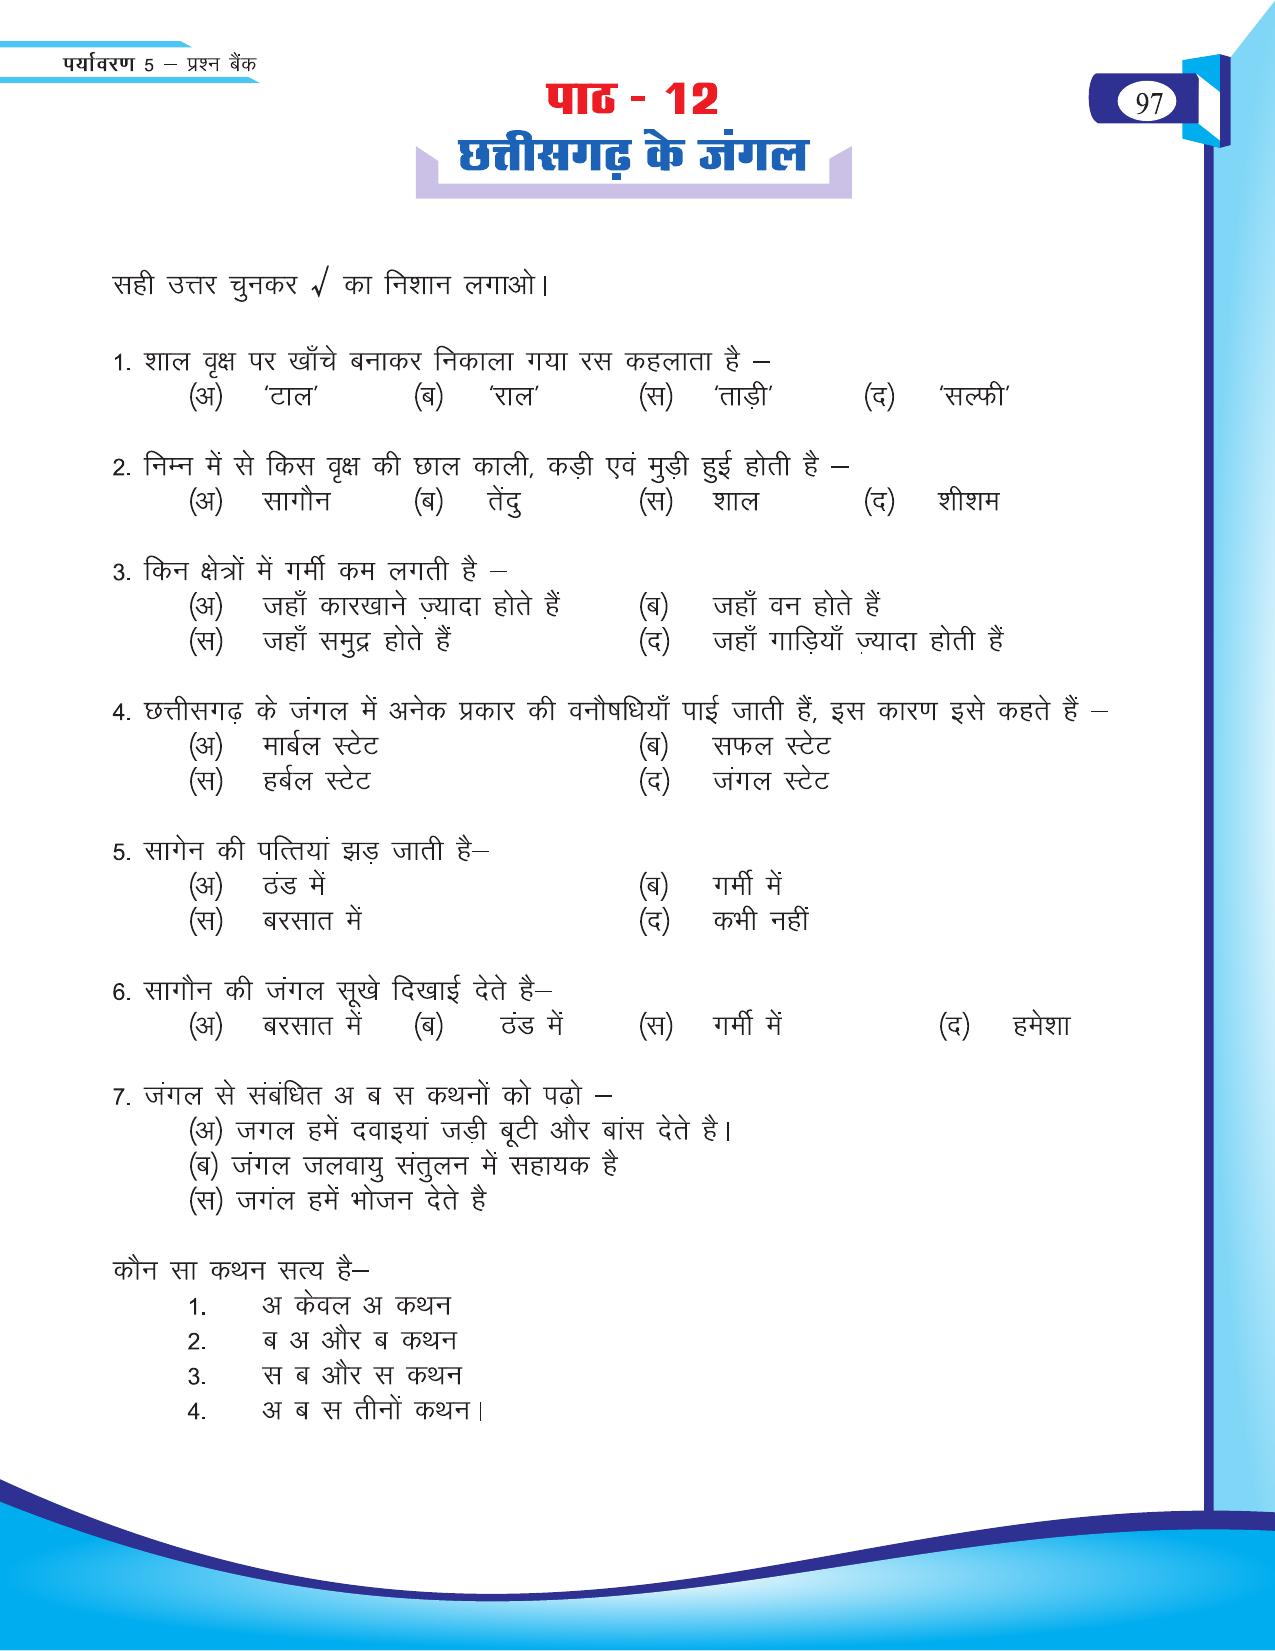 Chhattisgarh Board Class 5 EVS Question Bank 2015-16 - Page 23